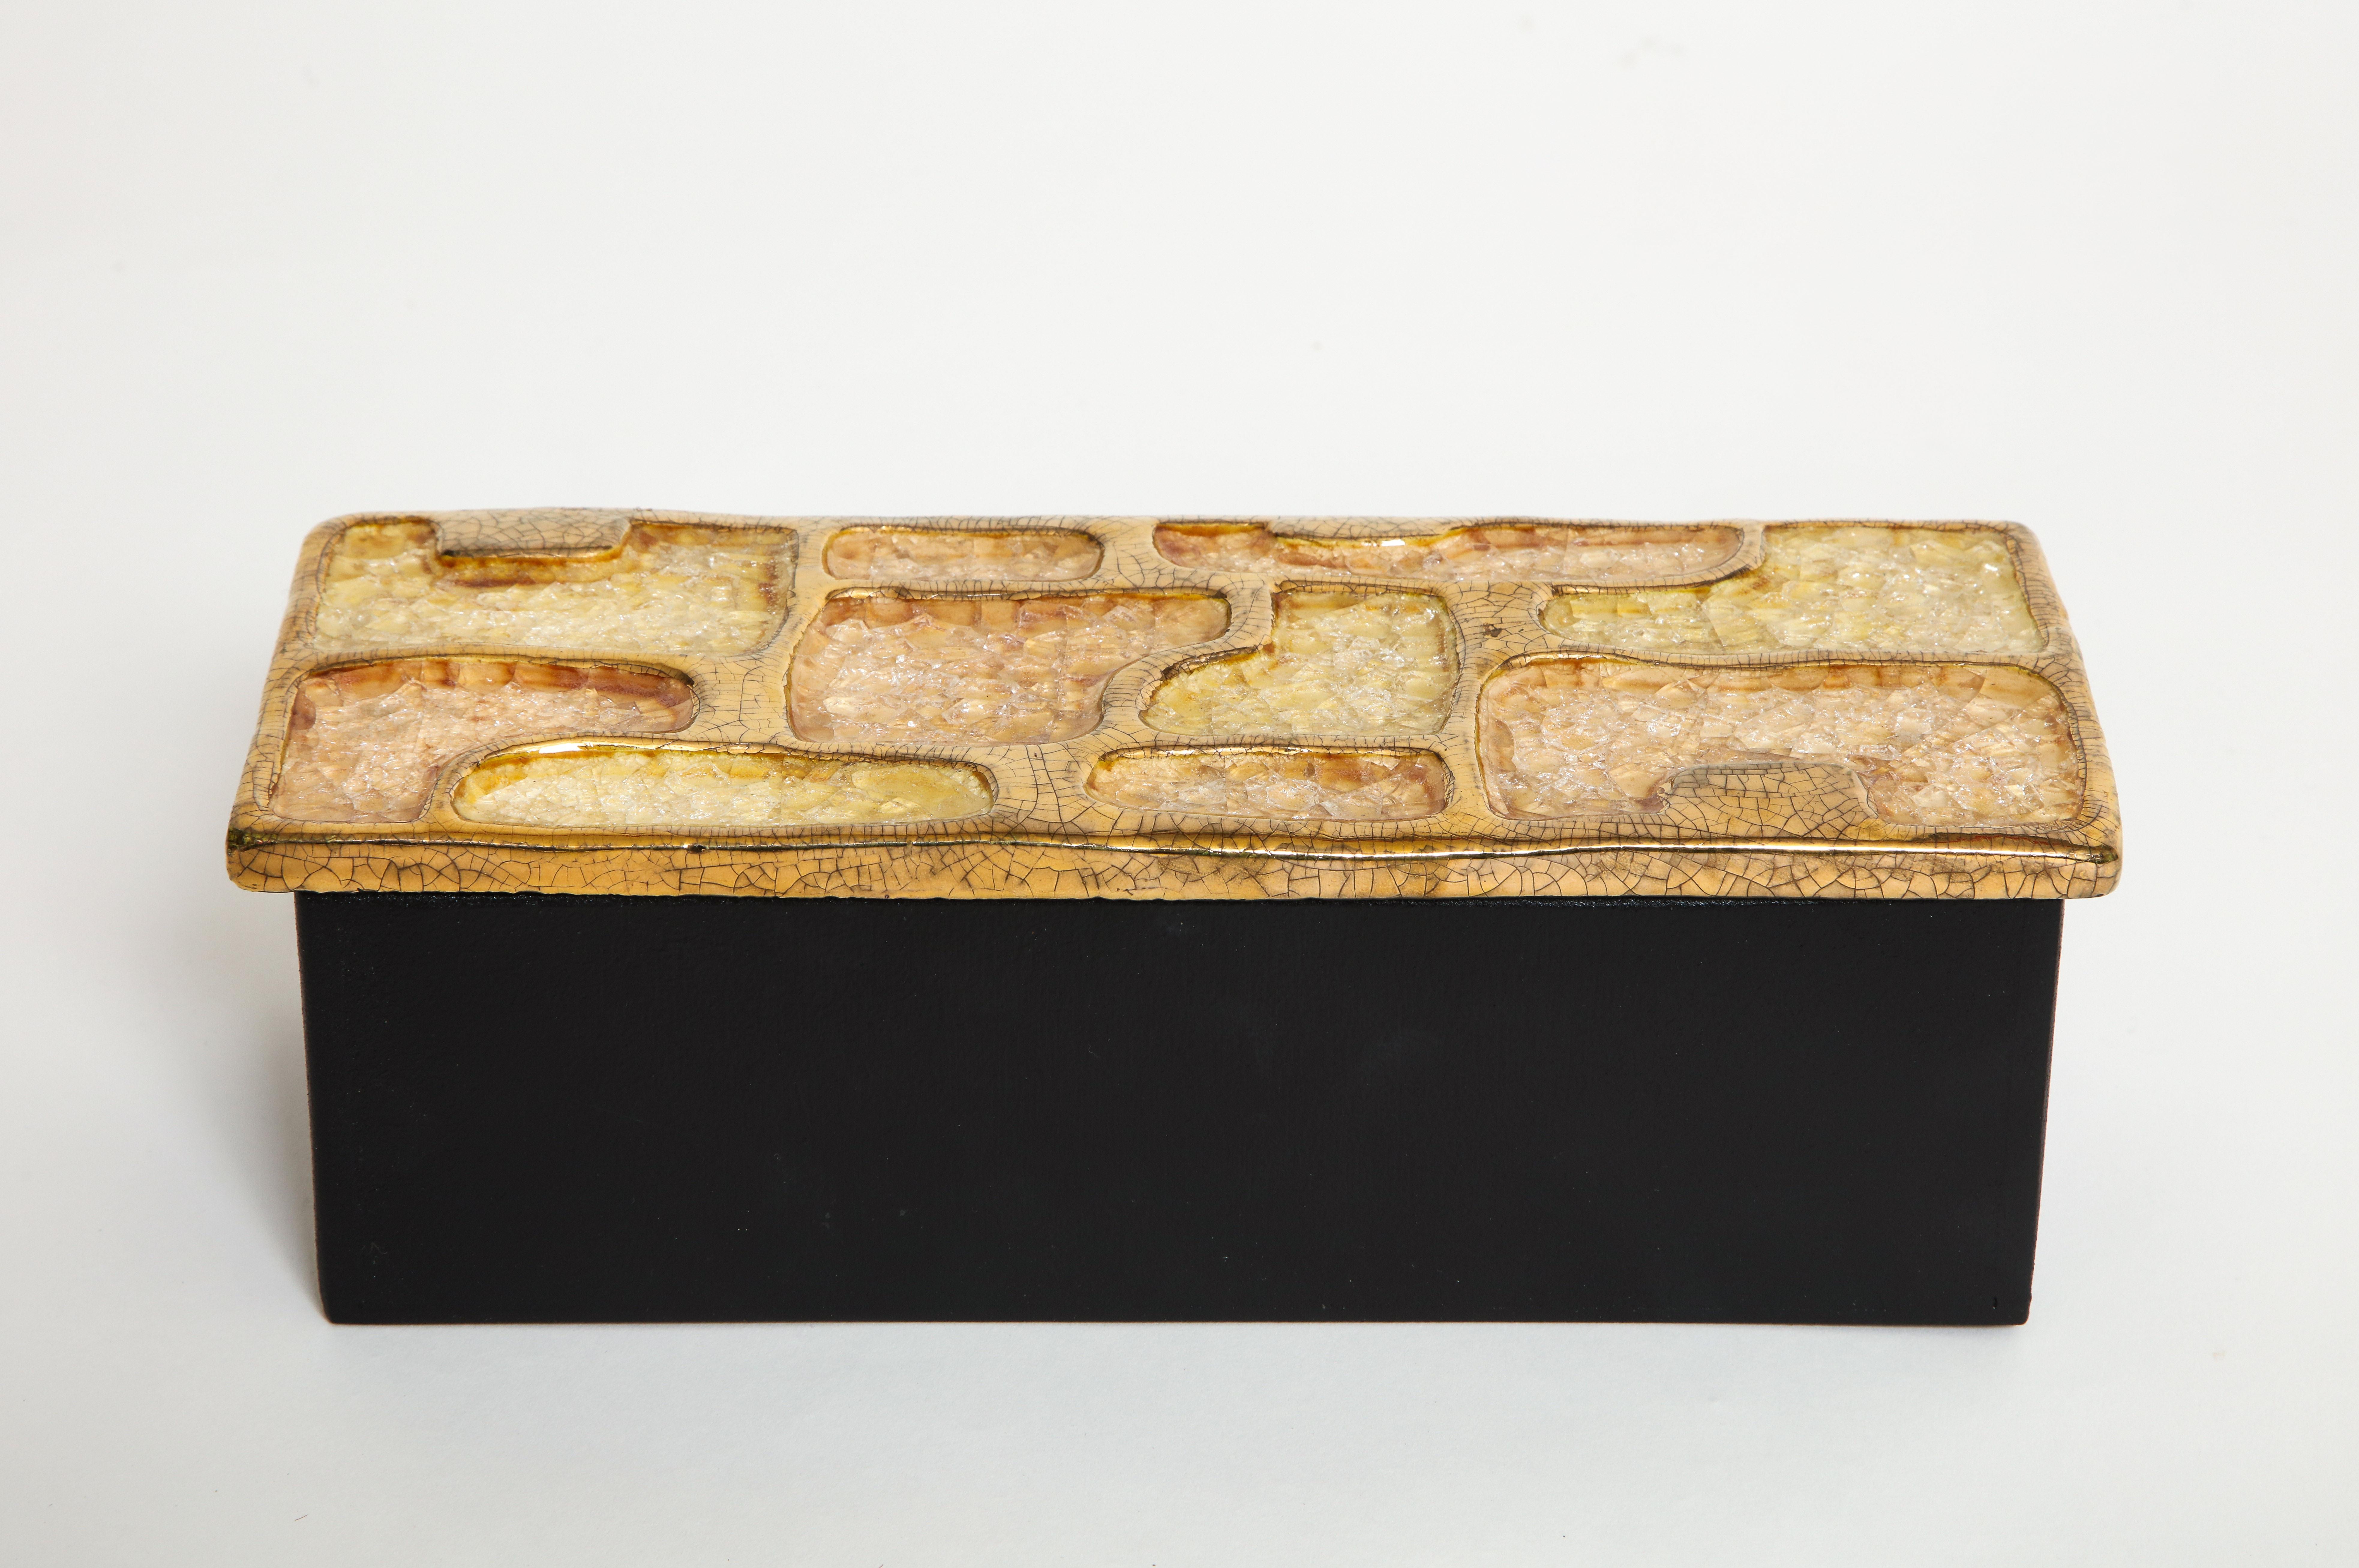 Emaille-Keramik-Schmuckkästchen goldgelb Midcentury, Frankreich, 1960er Jahre.

Eine exquisite emaillierte Keramikschachtel mit juwelenbesetzten Teilen und goldener Emaille. Der Boden der Box ist aus Holz. Ein schönes Kästchen zur Aufbewahrung von